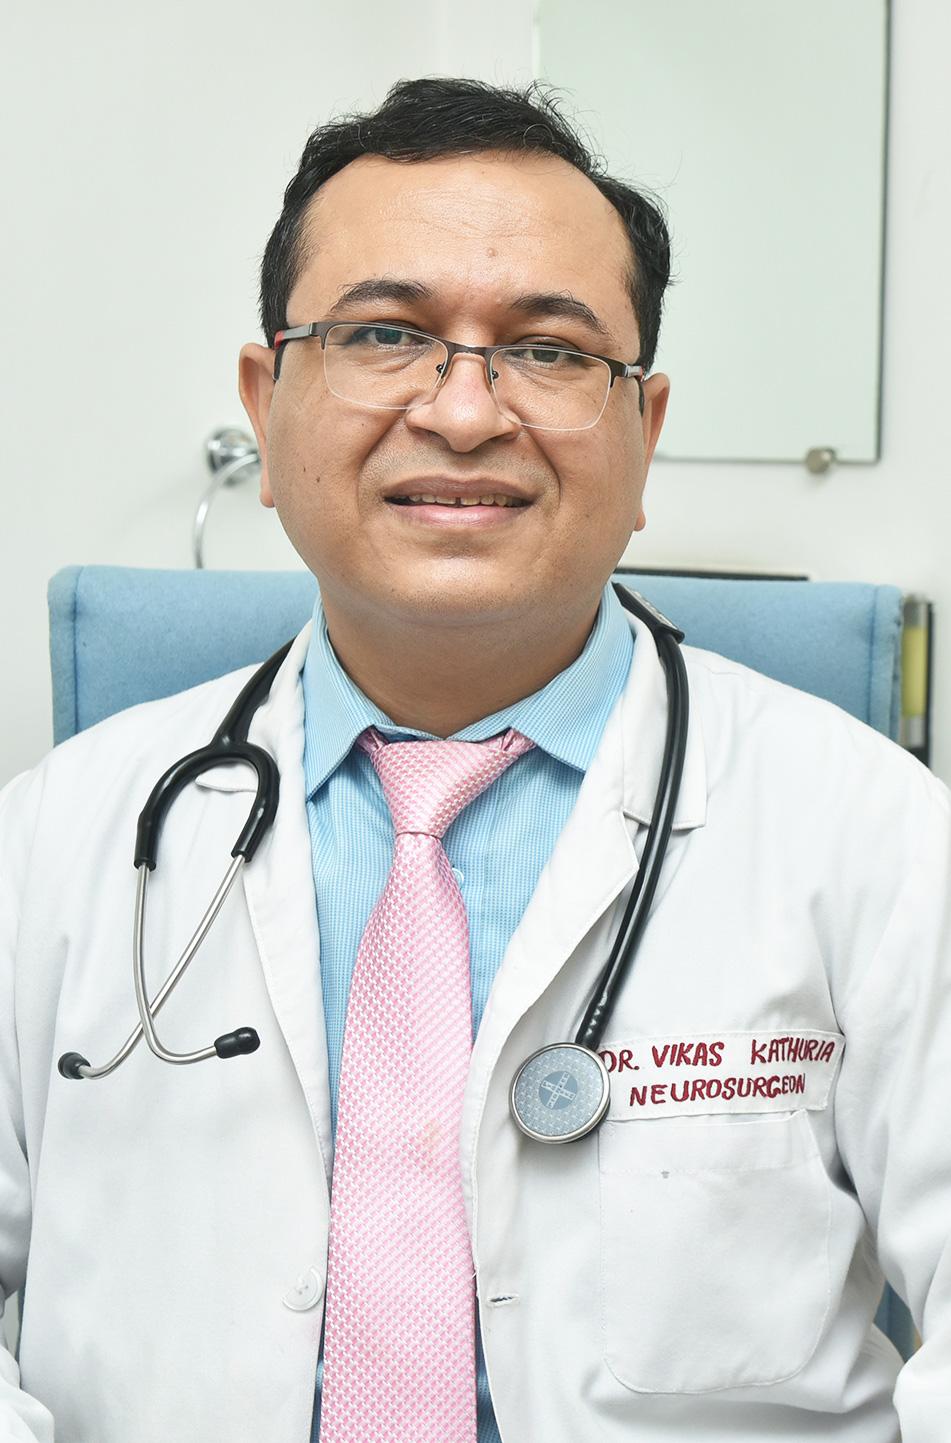 Dr. Vikas Kathuria